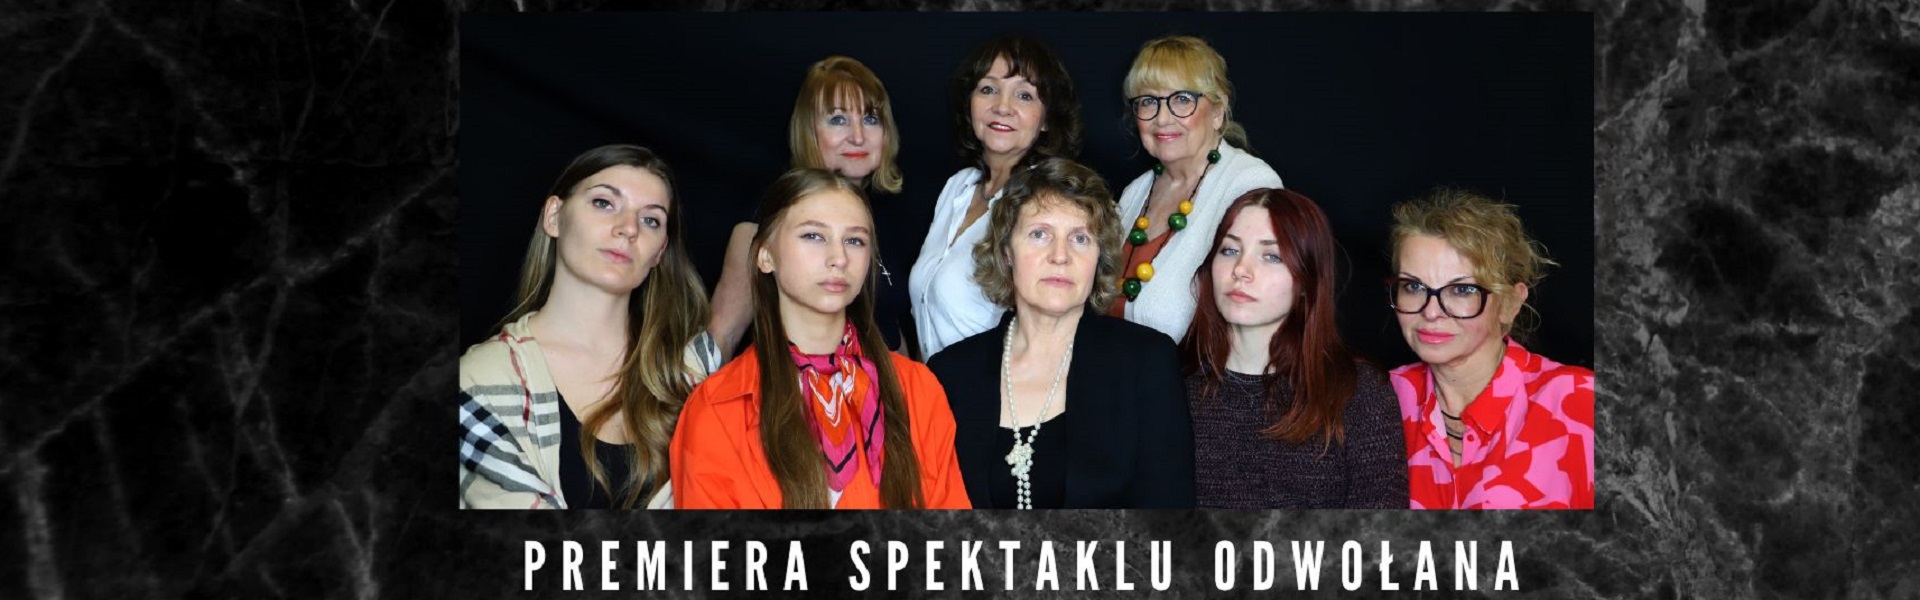 Premiera spektaklu 8 kobiet odwołana